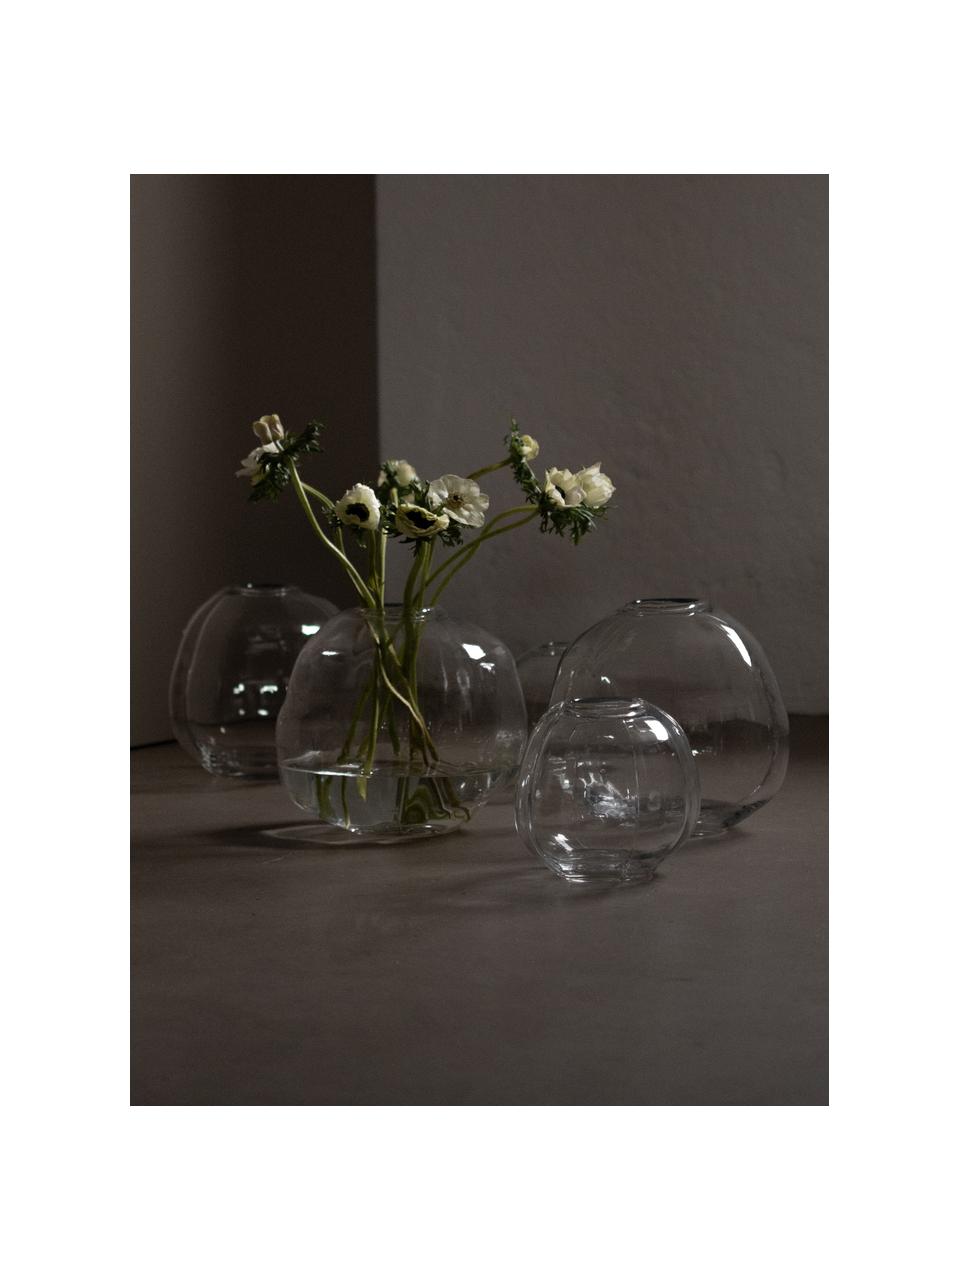 Vaso in vetro Pebble, Ø 28 cm, Vetro, Trasparente, Ø 28 x Alt. 28 cm